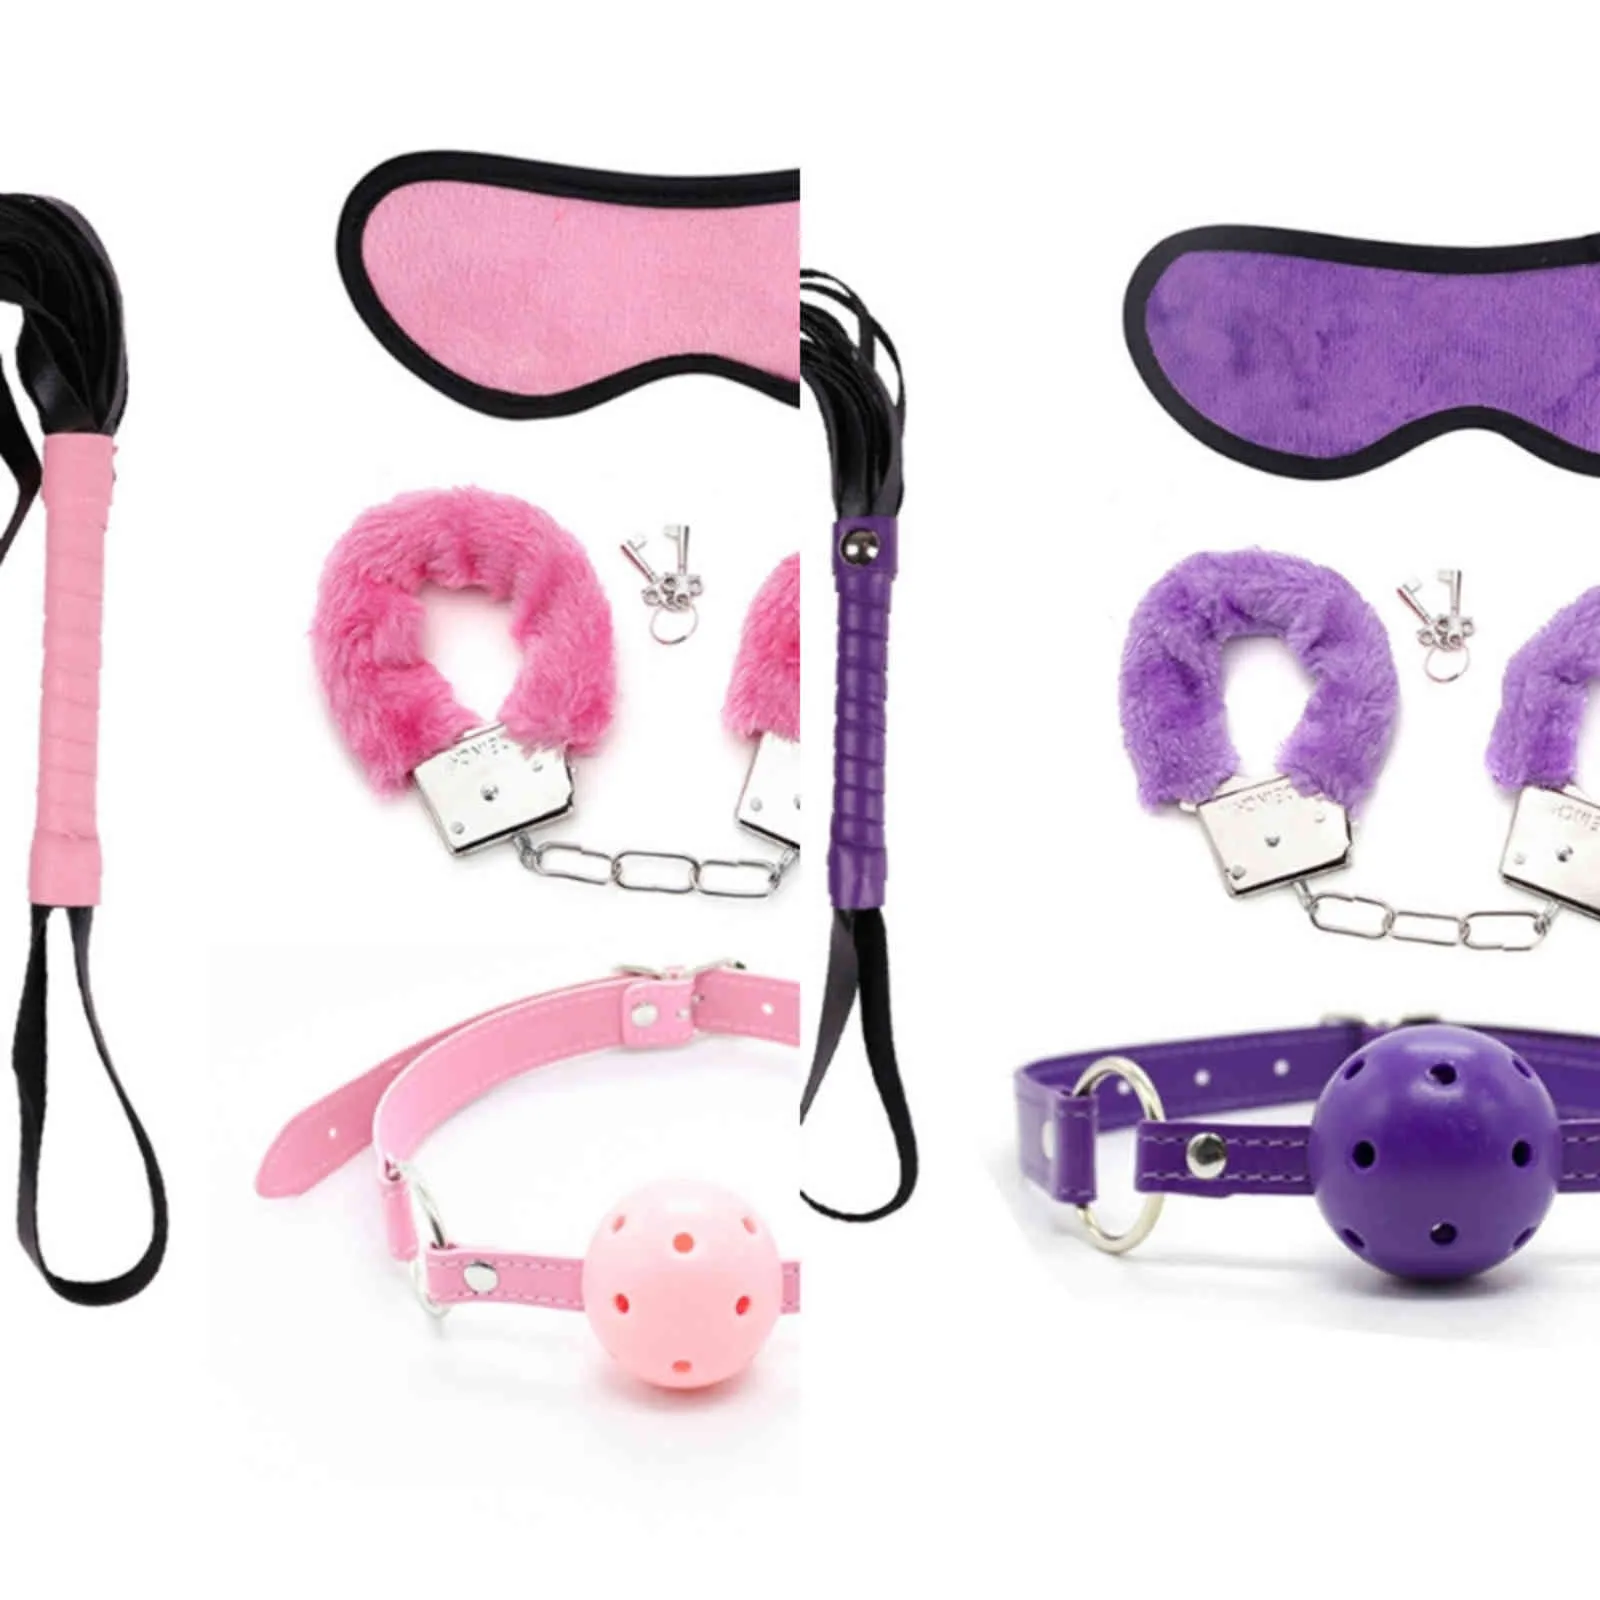 Bondages 4PCS Black Ball Gag Furry Handschellen BDSM Peitsche Augenmaske für Cosplay Erwachsene Sexspielzeug Paare Kit 1122